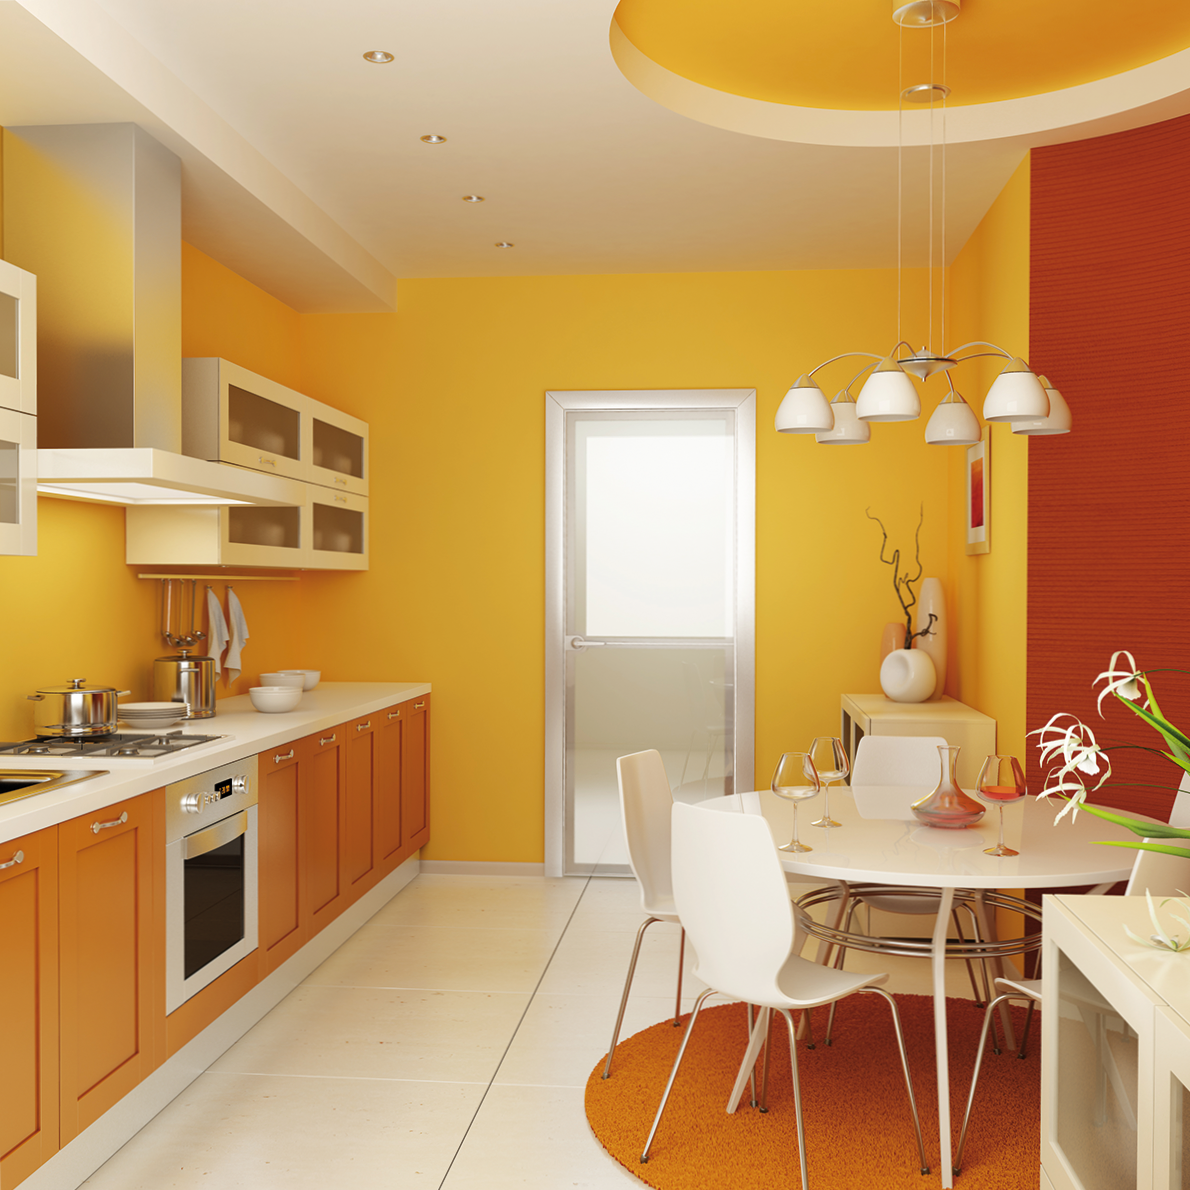 Какая лучшая краска для кухни. Оранжевый цвет в интерьере кухни. Цветовые решения в интерьере. Цвет стен на кухне. Кухнямв орандеых тонах.